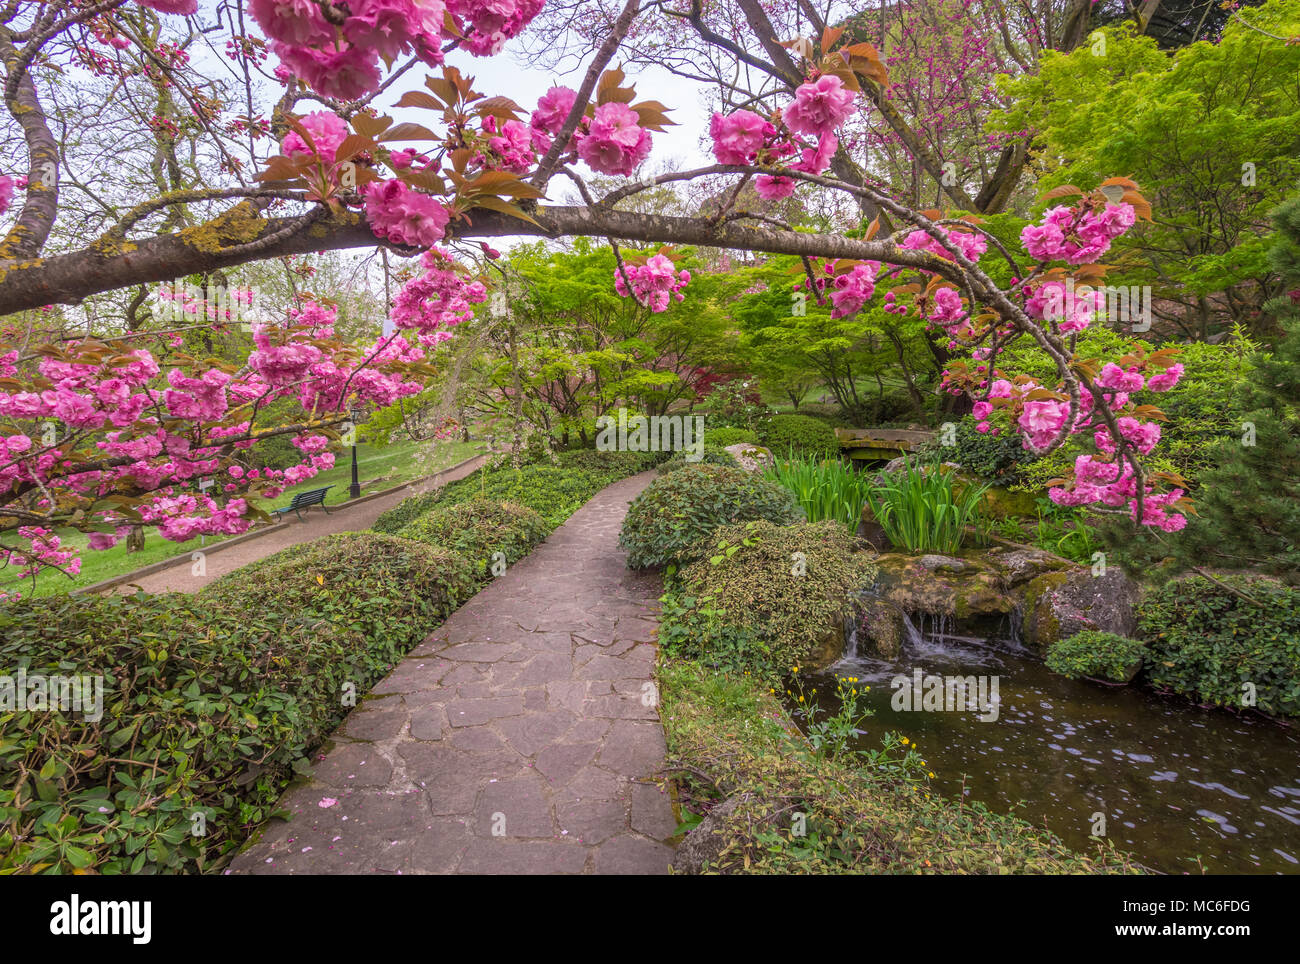 Rome (Italie) - Le Jardin botanique de l'université de Trastevere est un parc avec des fontaines monumentales et un jardin japonais ici dans la fleur appelée Hanami Banque D'Images